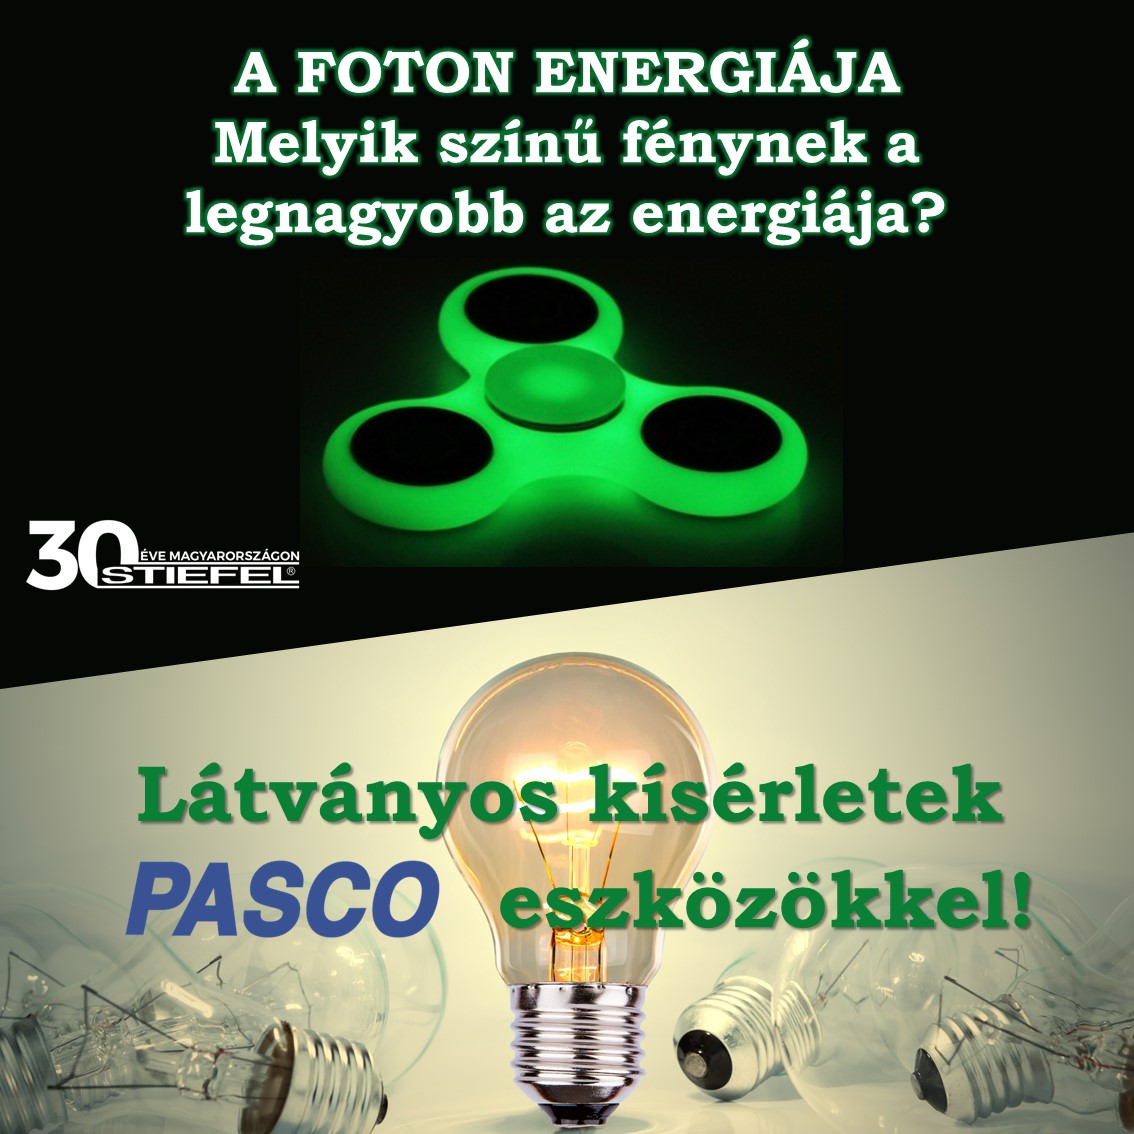 A foton enerigája - Látványos kísérletek PASCO eszközökkel 1. rész